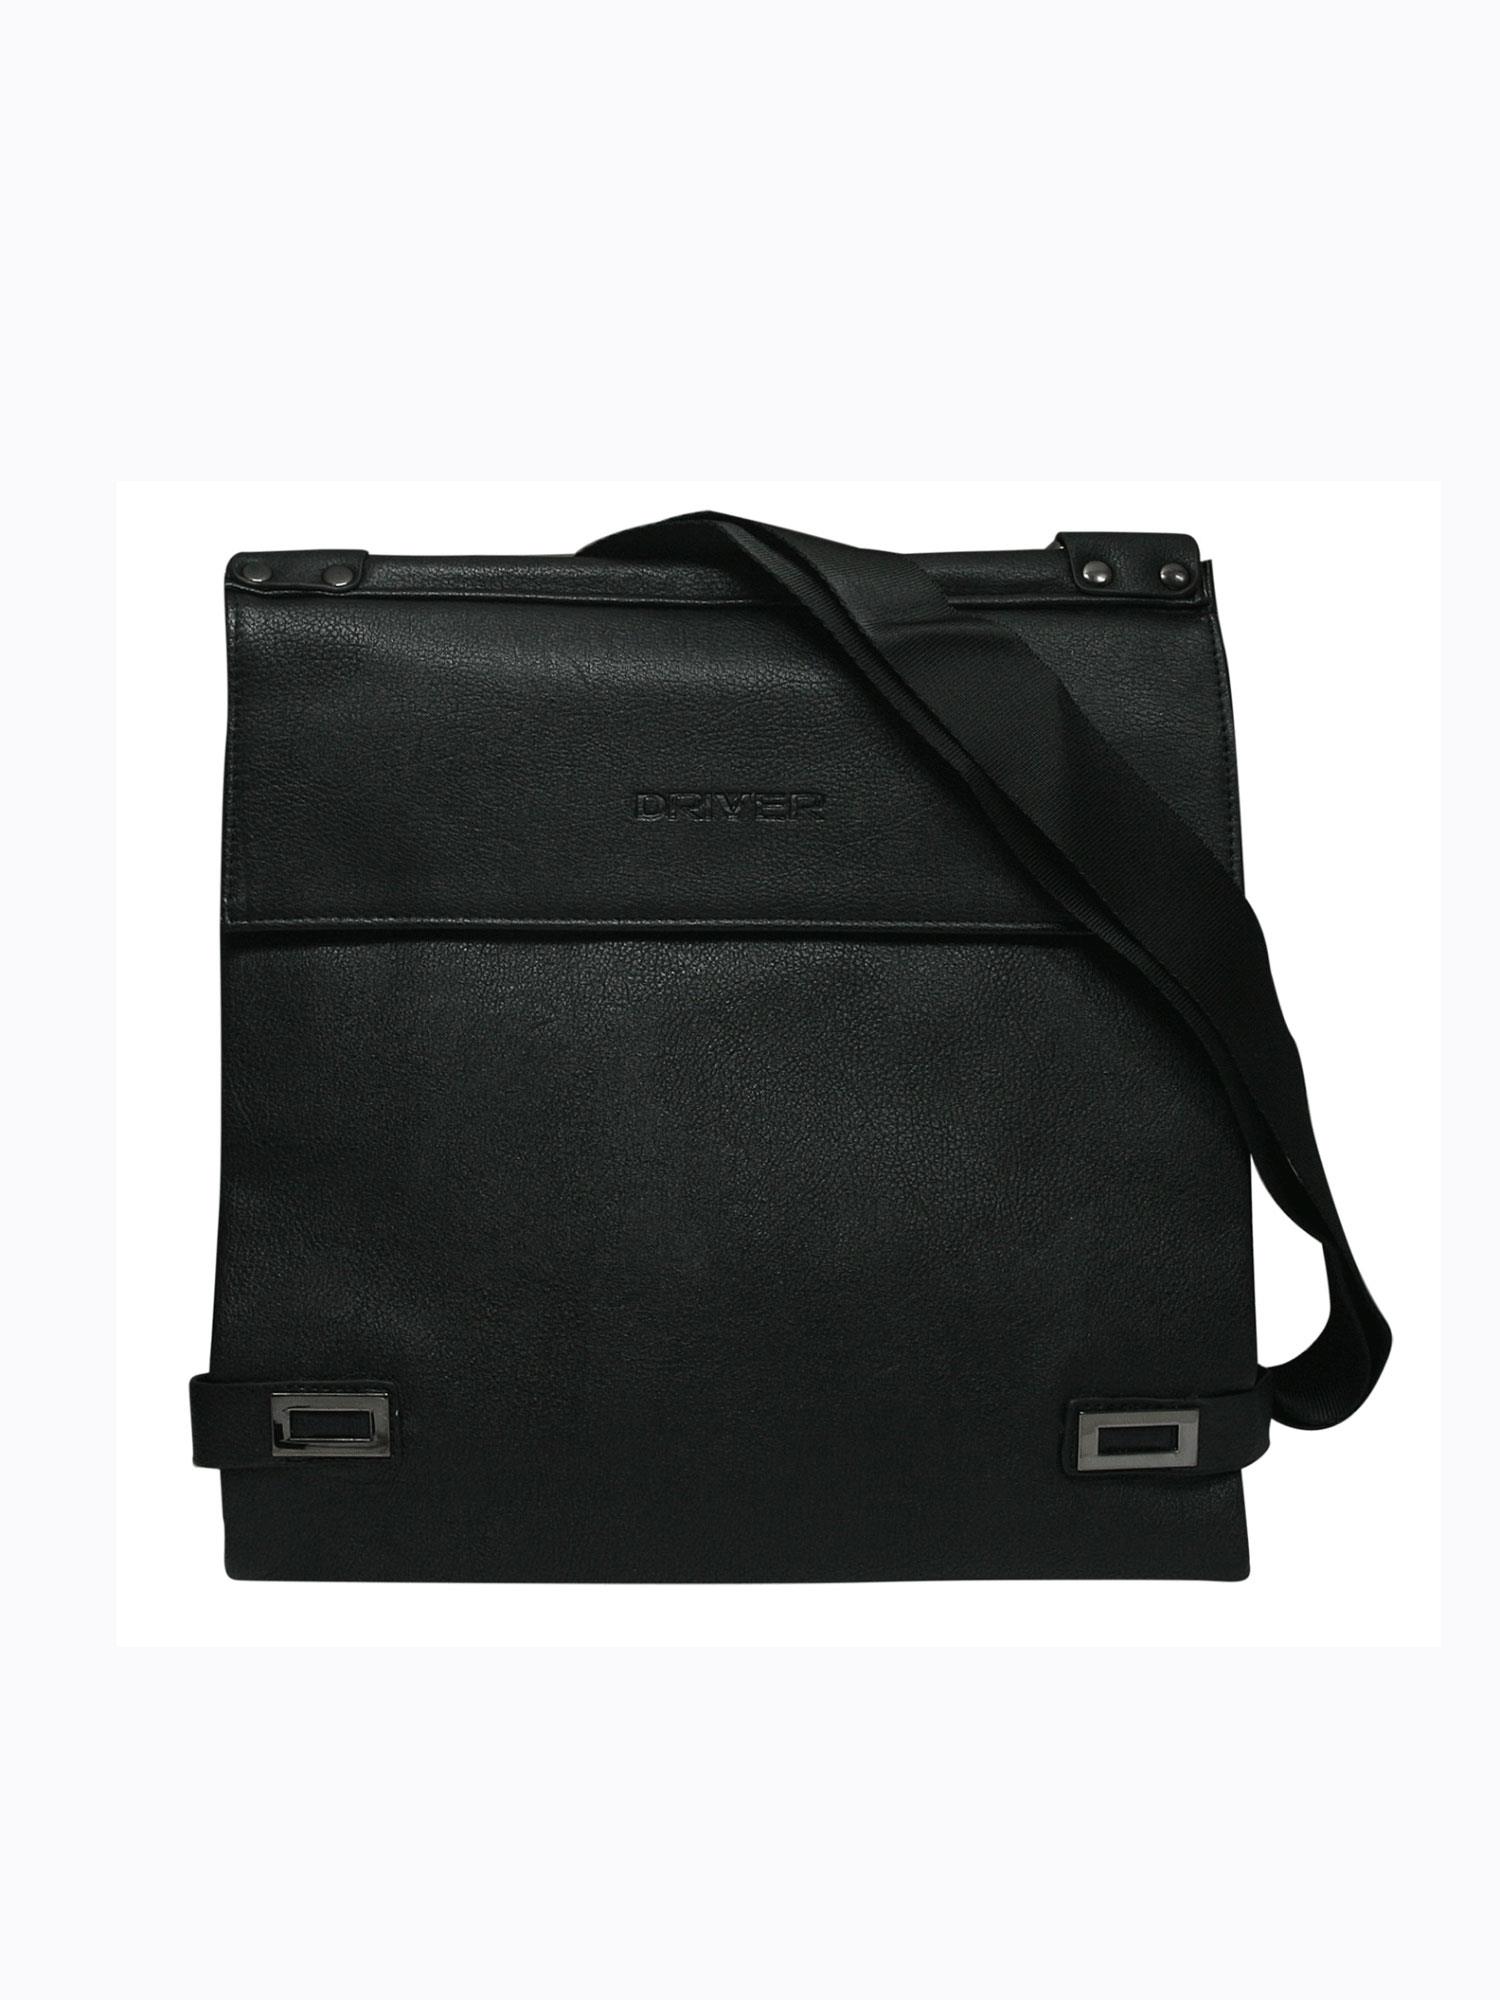 Black Men's Messenger Bag Made Of Eco-leather